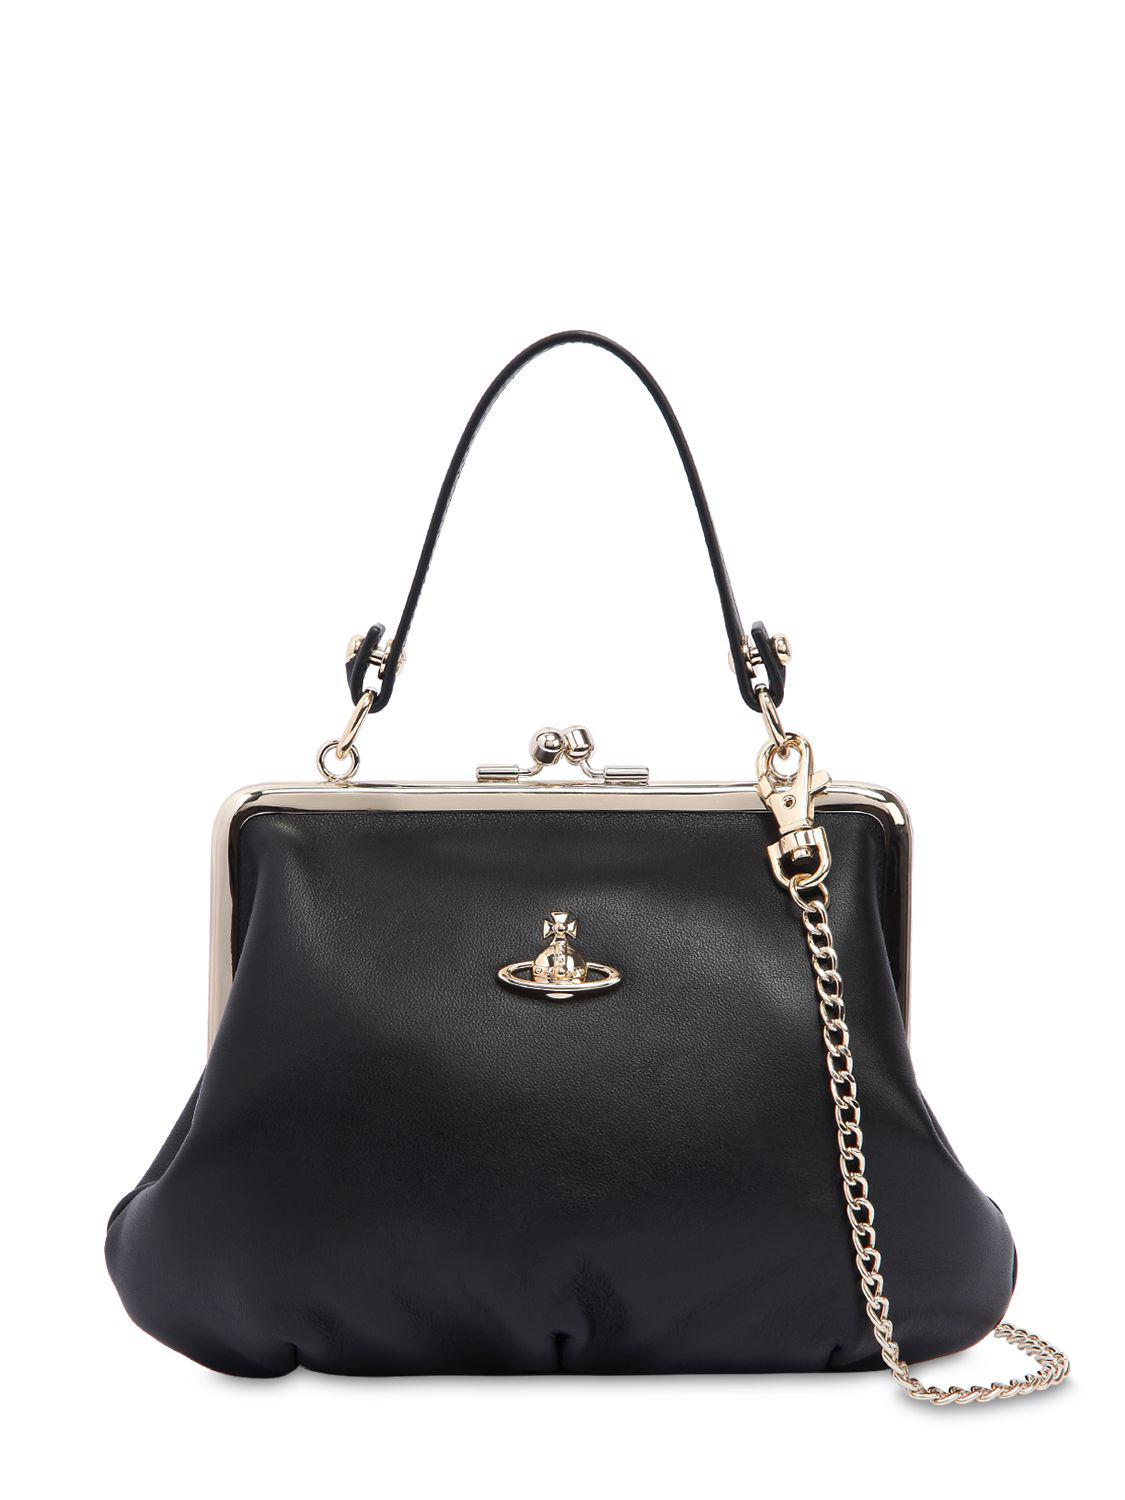 Vivienne Westwood Nappa Leather Shoulder Bag in Black - Lyst